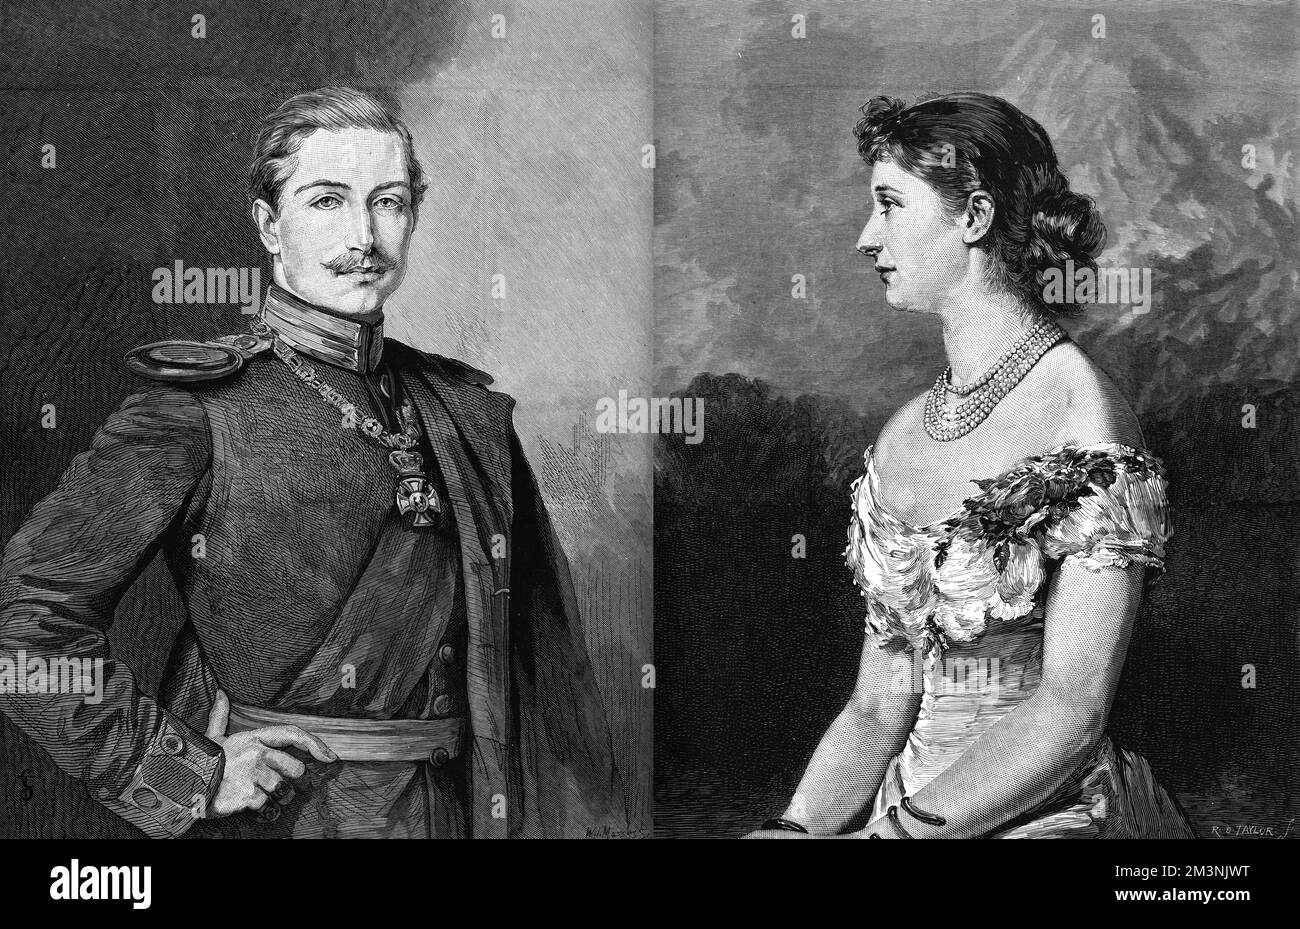 Prinz Wilhem von Preußen (später Kaiser Wilhelm II) (1859-1941) und seine neue Frau Prinzessin Augusta Victoria von Schleswig-Holstein (1858-1921) - sie heirateten am 27.. Februar 1881 in Berlin. Datum: 1881 Stockfoto